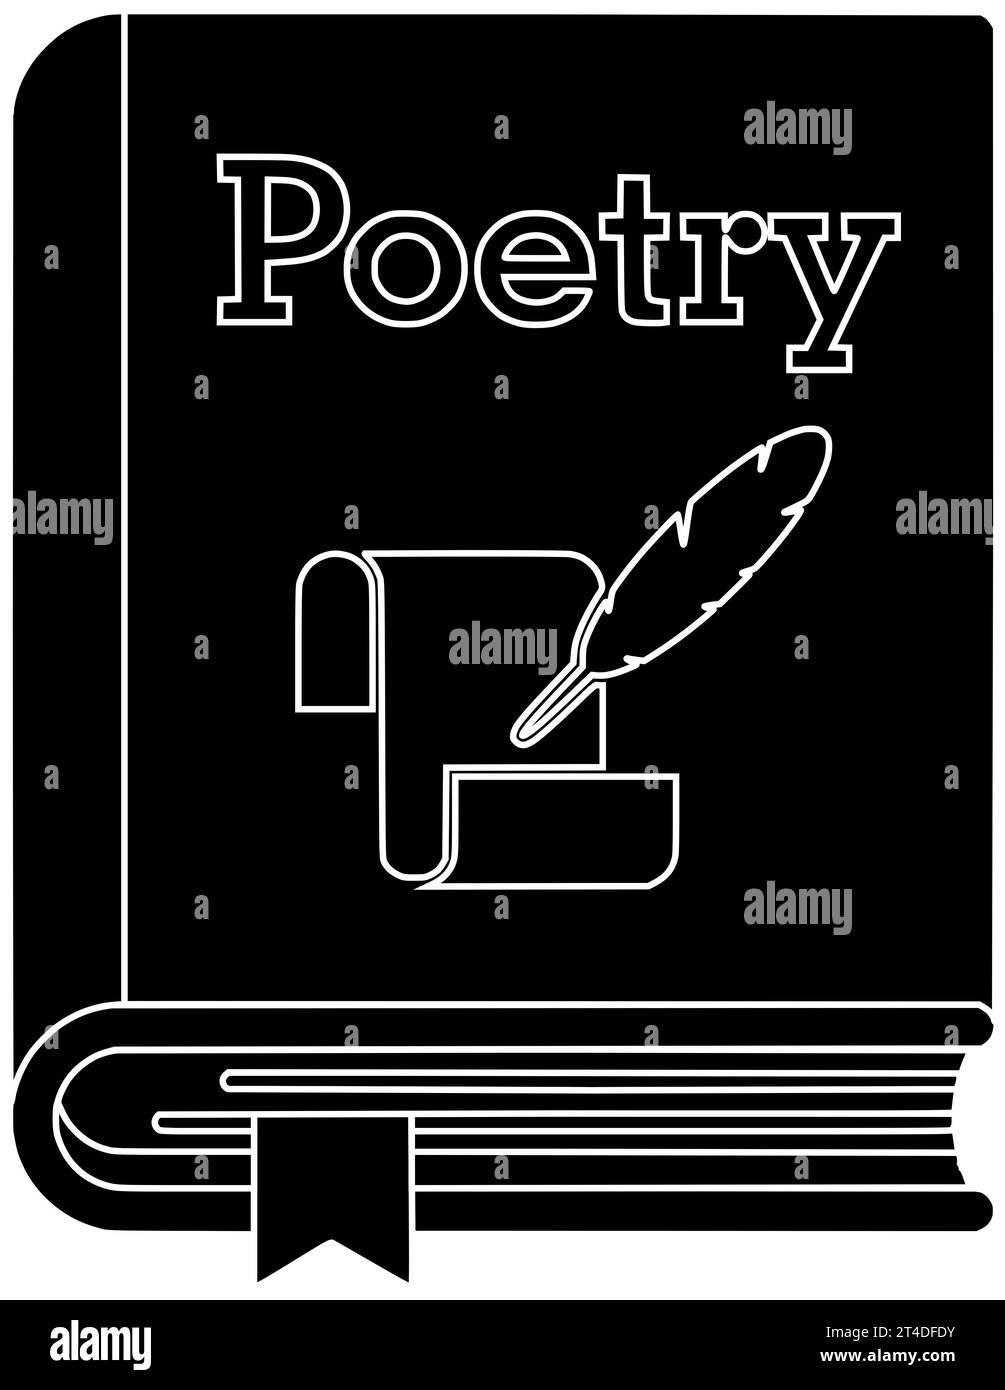 autore lettera nera silhouette poesia illustrazione icona penna scrittura logo carta creativa piuma poema scrittore inchiostro libri letteratura articolo educazione Foto Stock